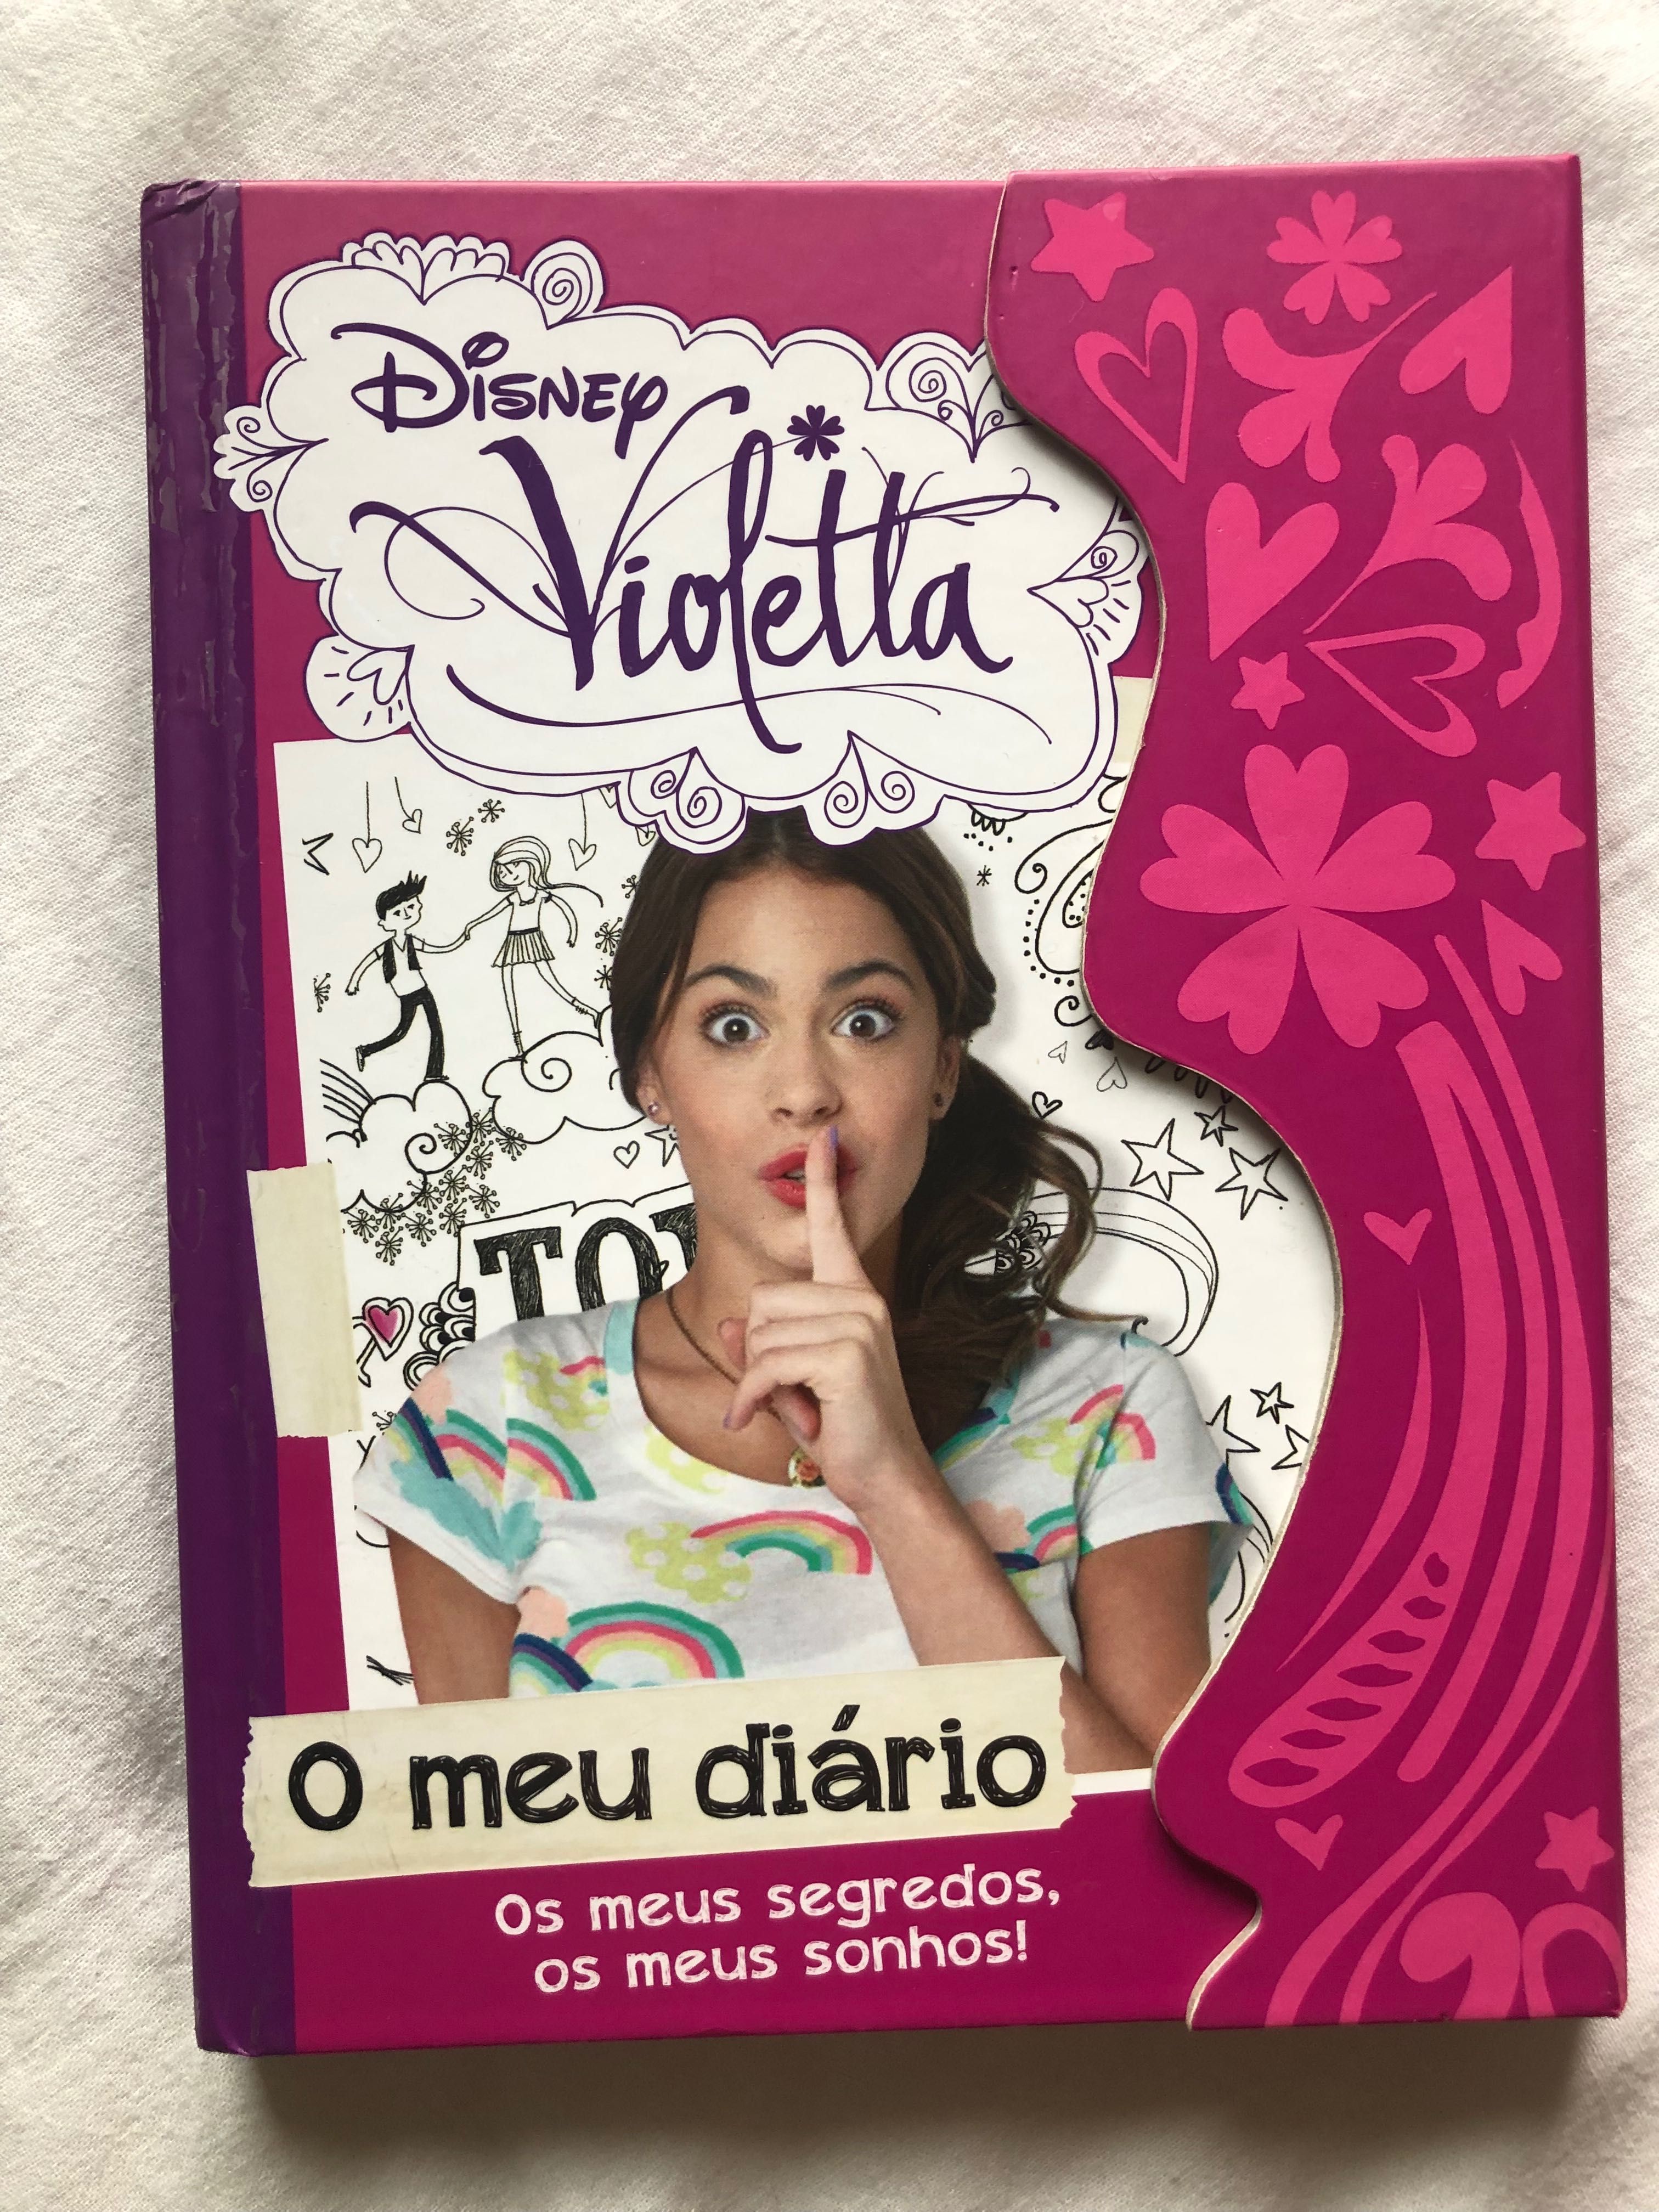 “O meu diário” Violetta da Disney